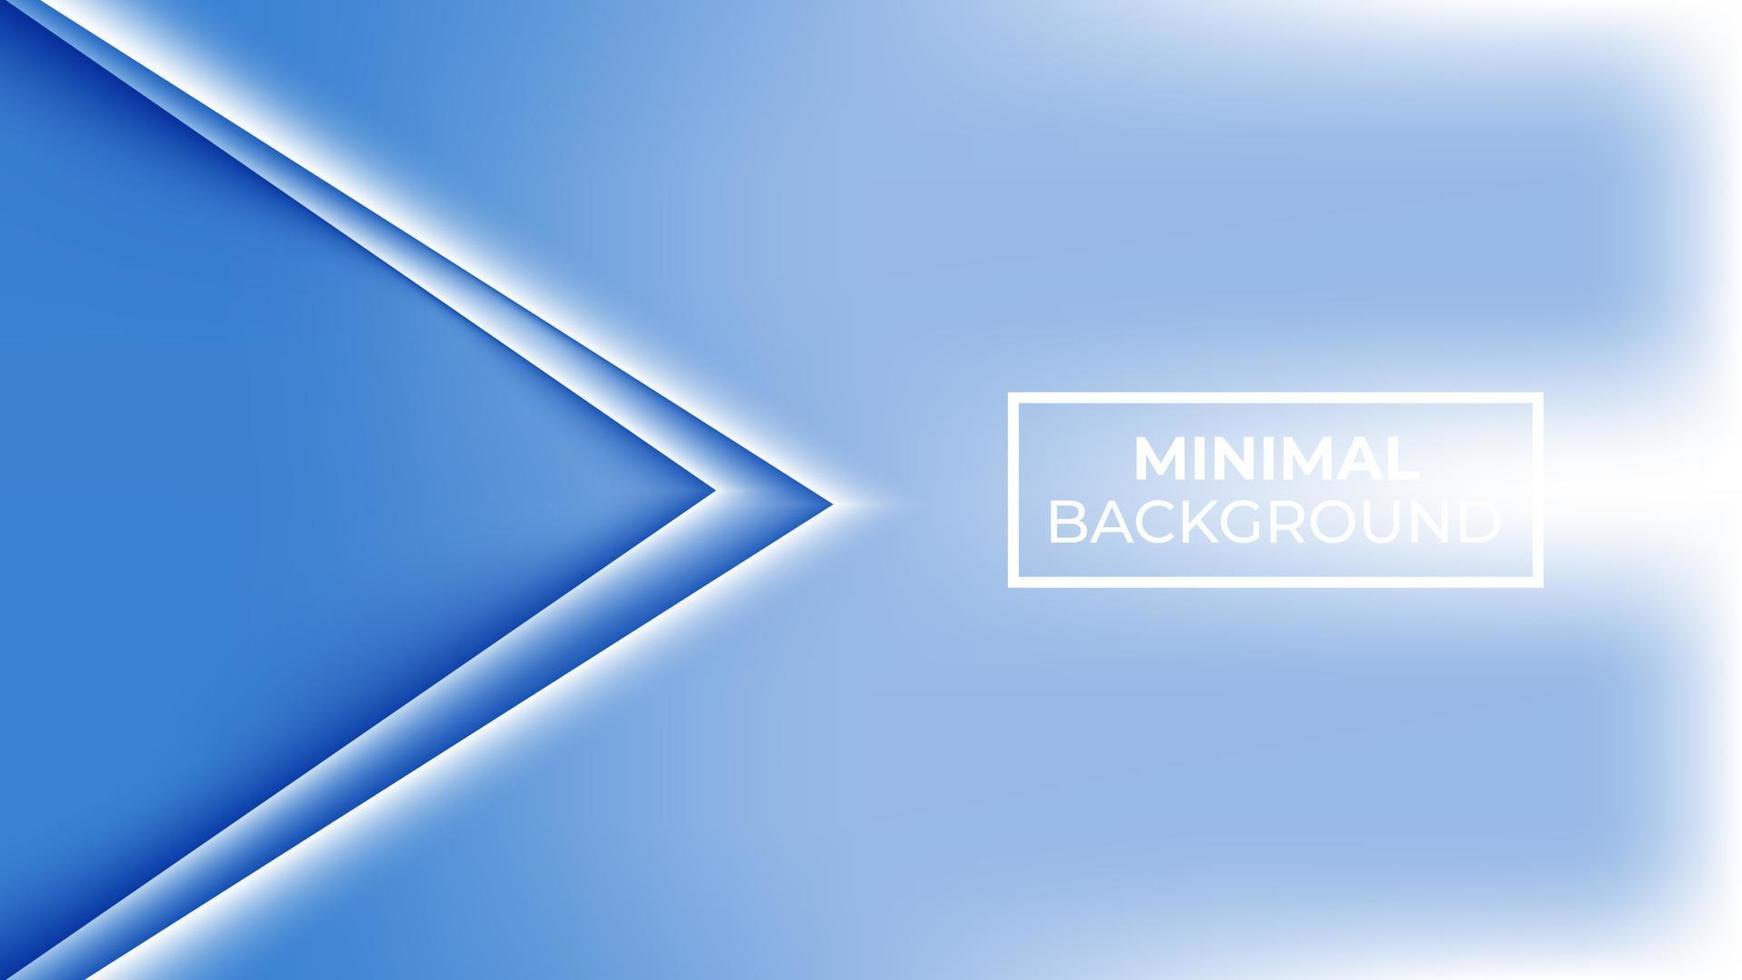 cor de fundo azul mínima e os dois triângulos sobrepostos são brancos, fáceis de editar vetor